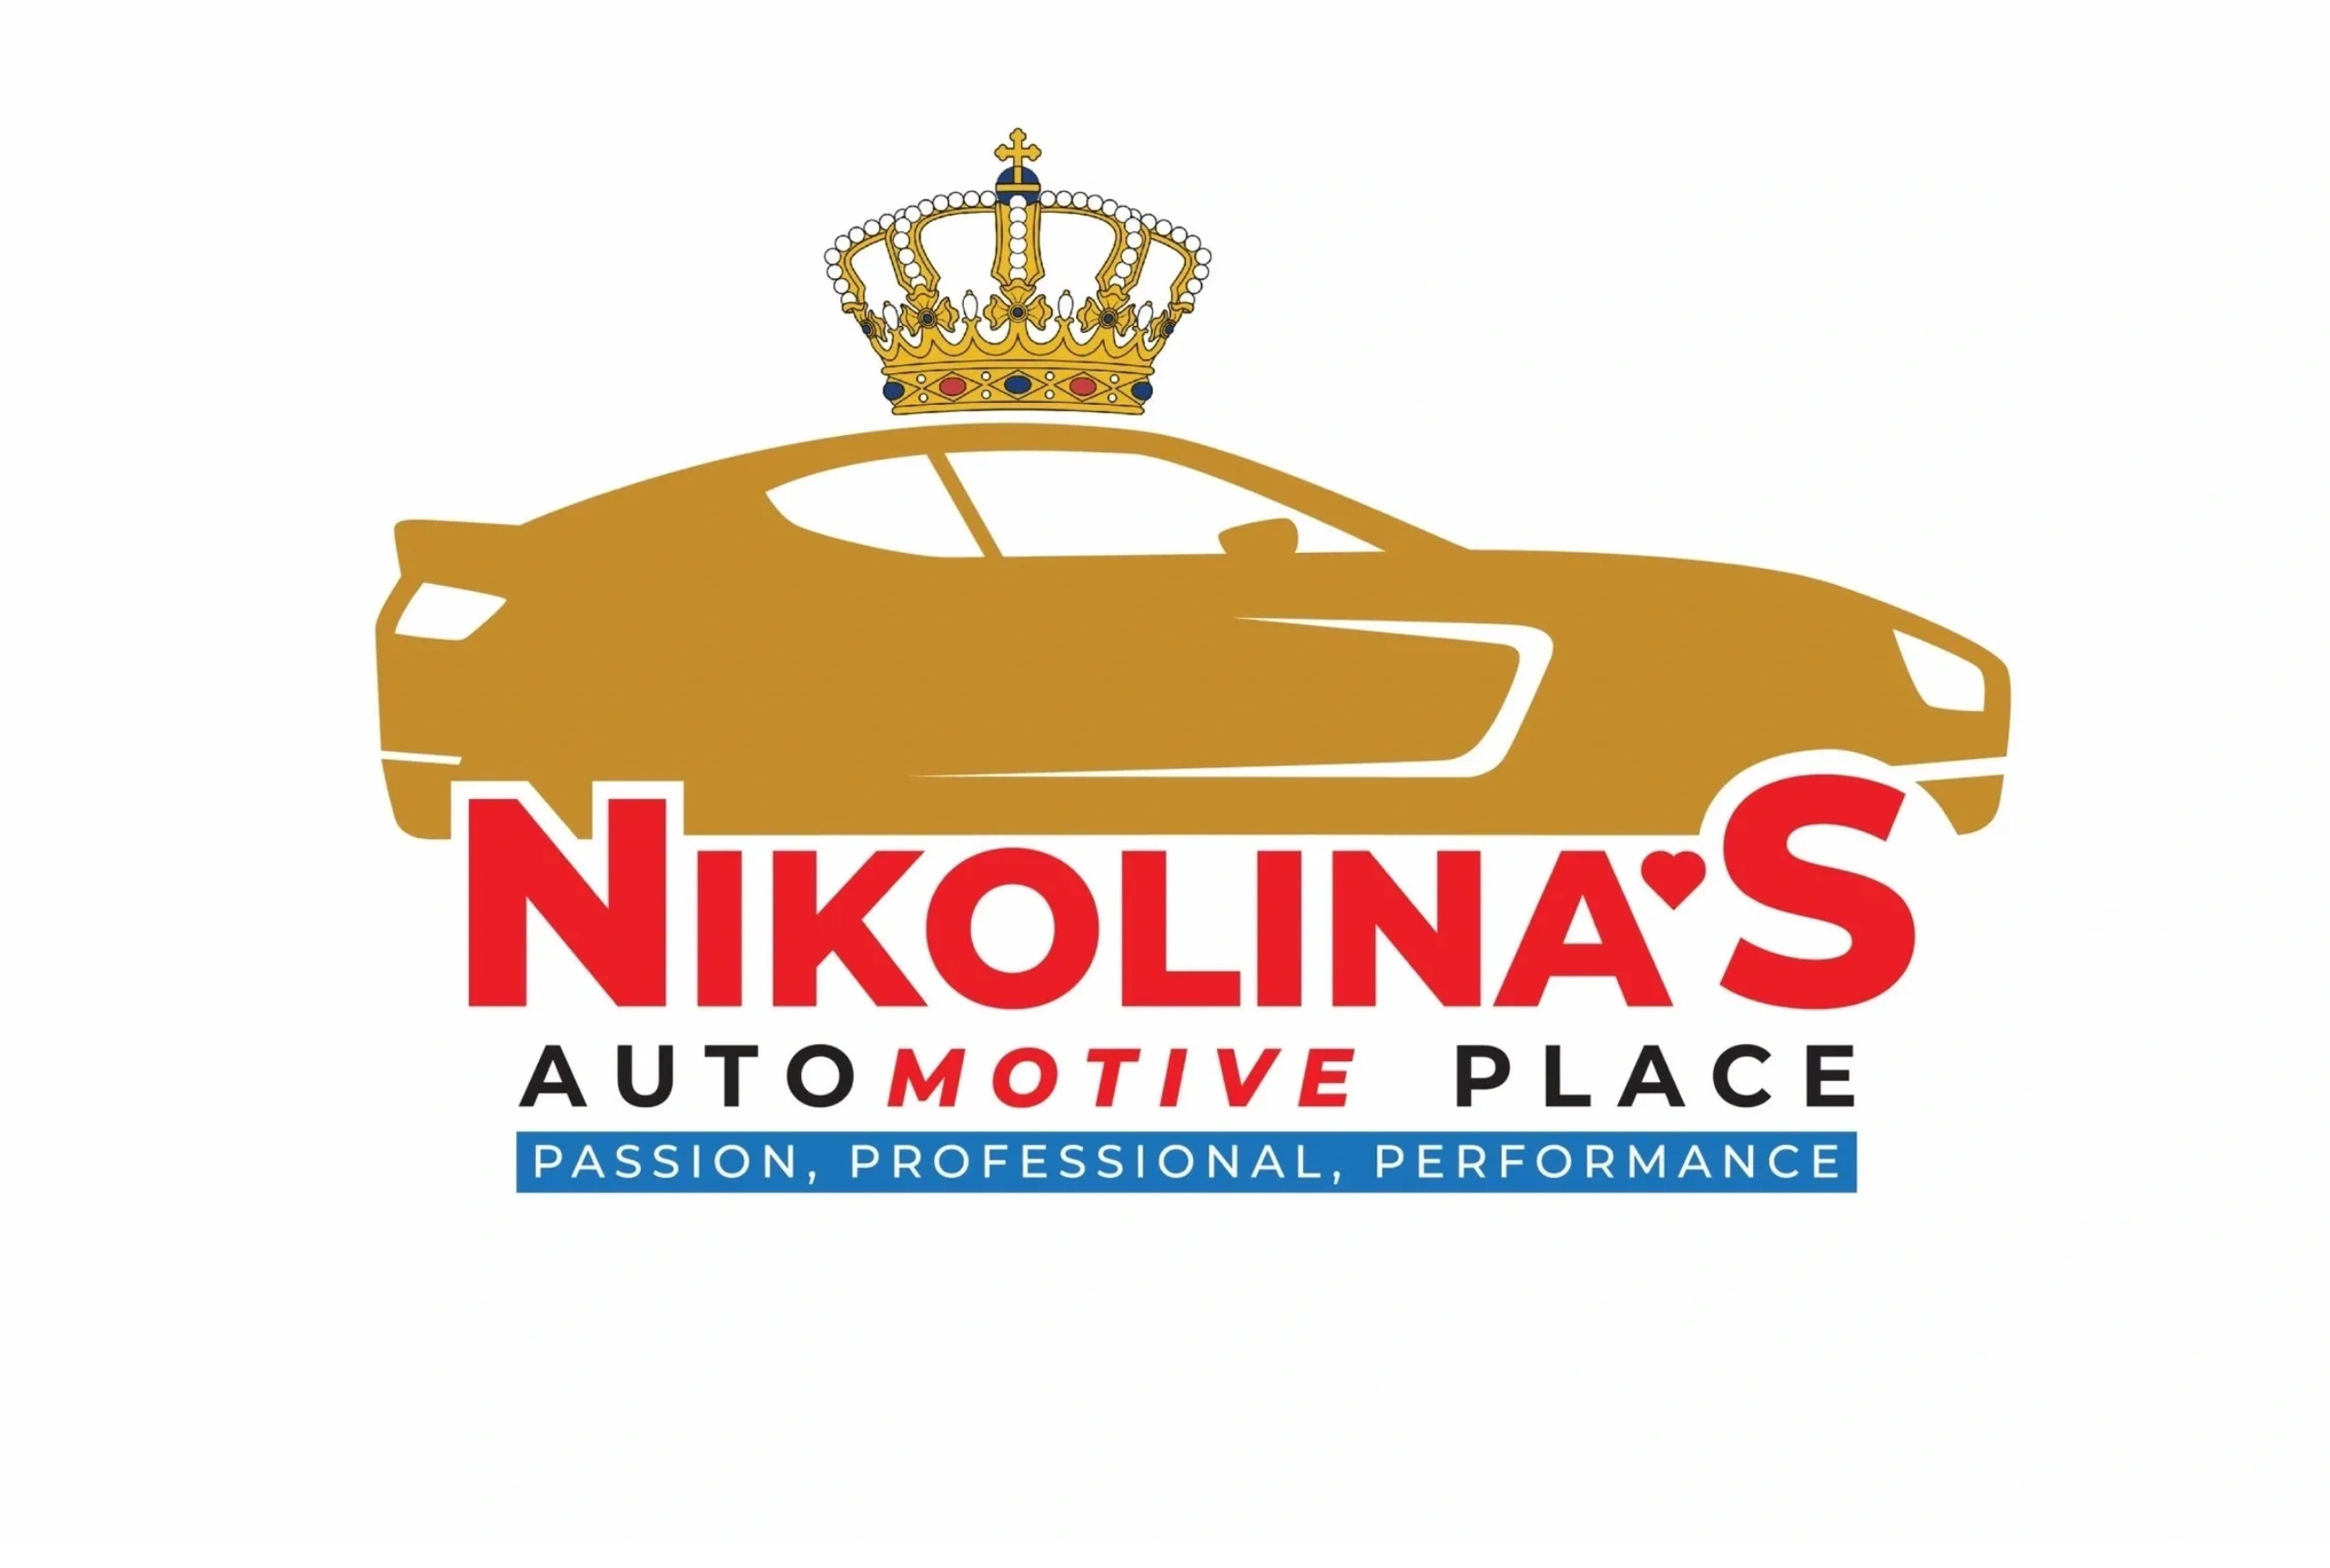 Nikolina's Automotive Place 